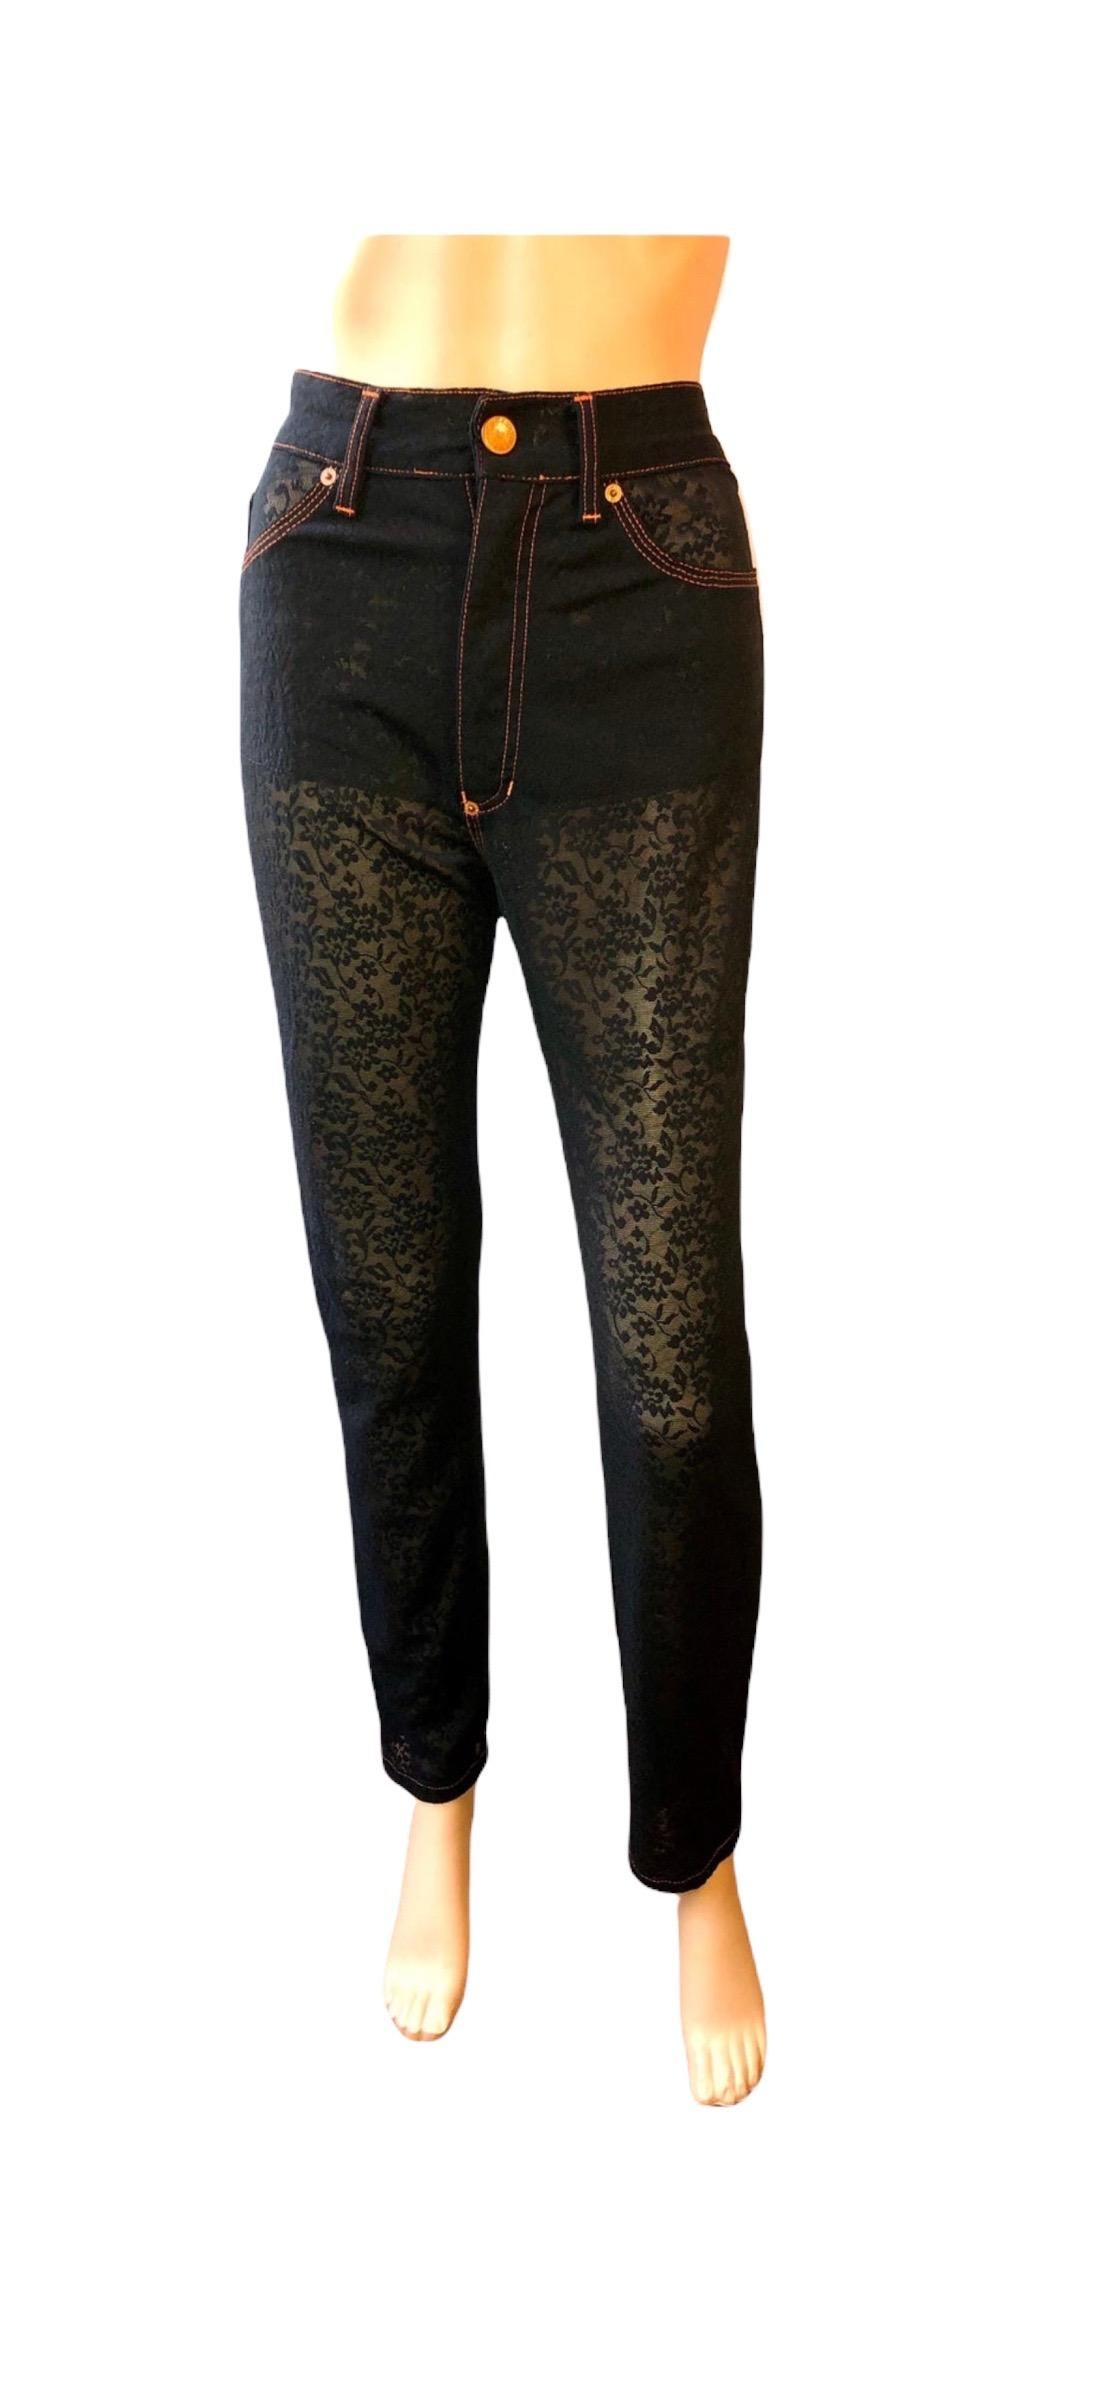 Jean Paul Gaultier Vintage Semi-Sheer Mesh Black Leggings Pants For Sale 1